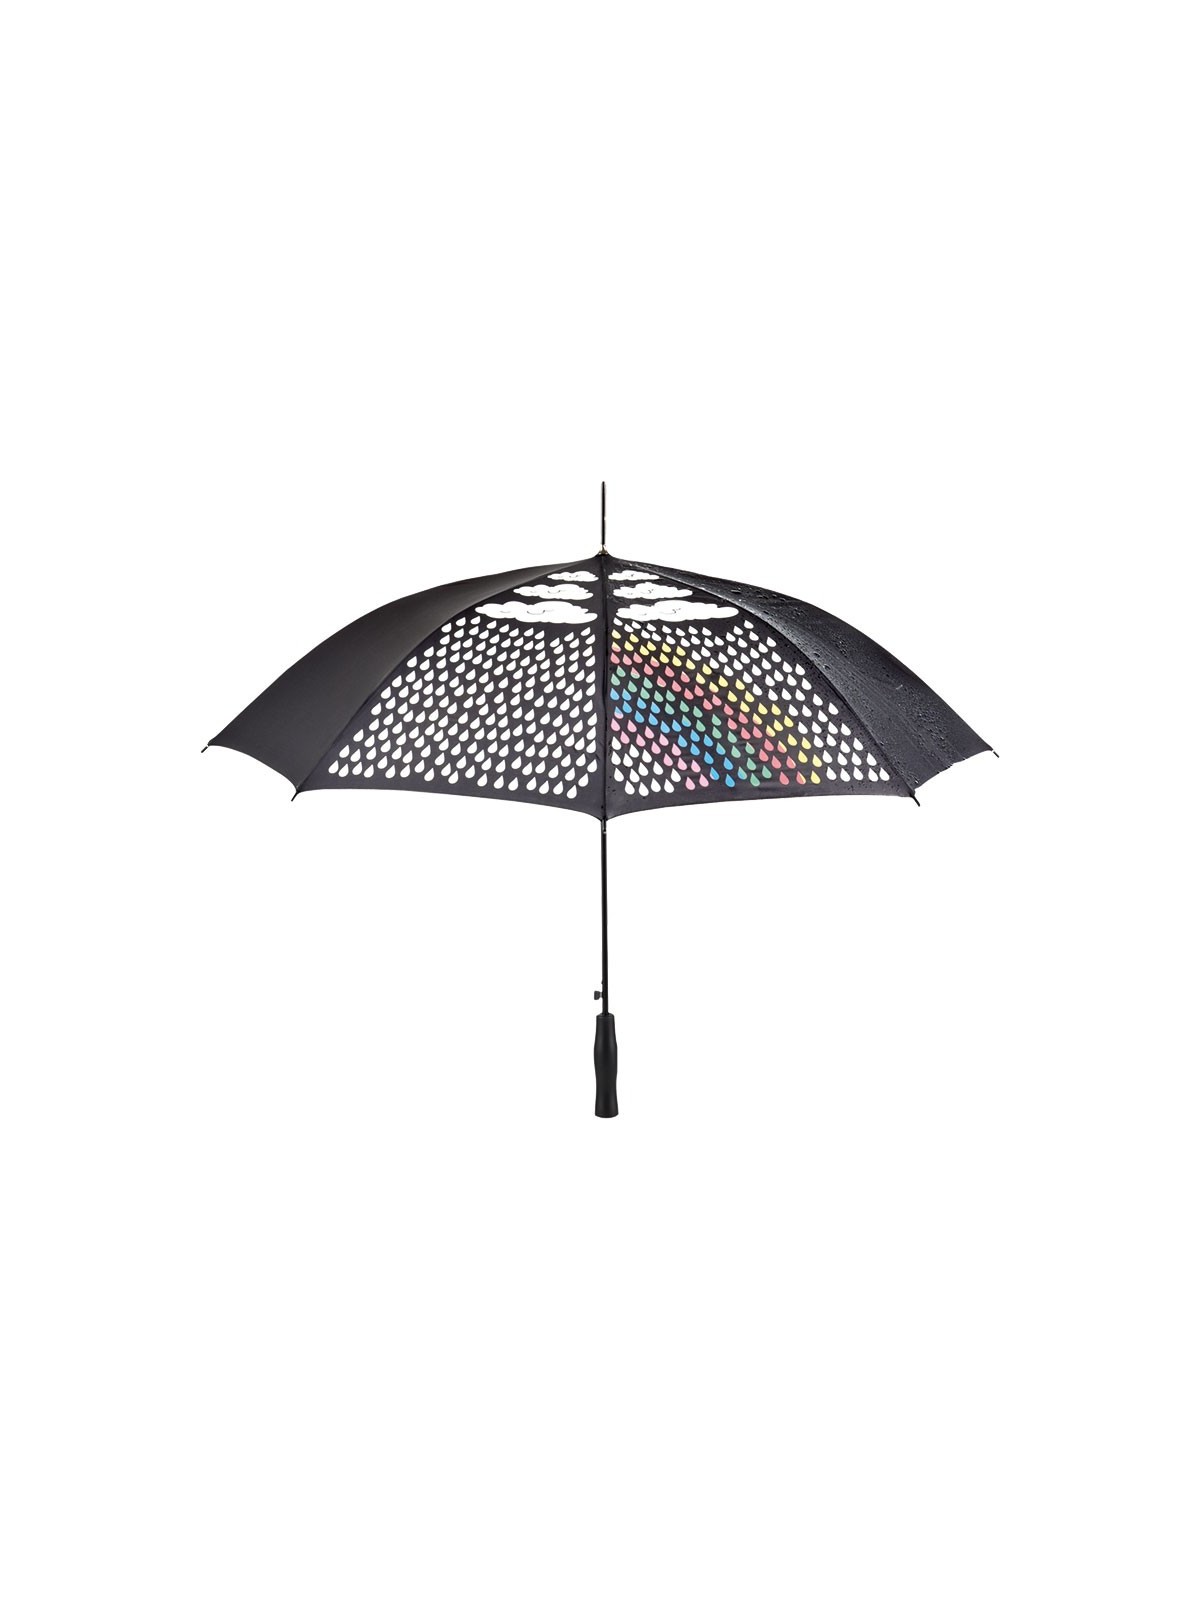 75-024 Parapluie publicitaire Colormagic personnalisé